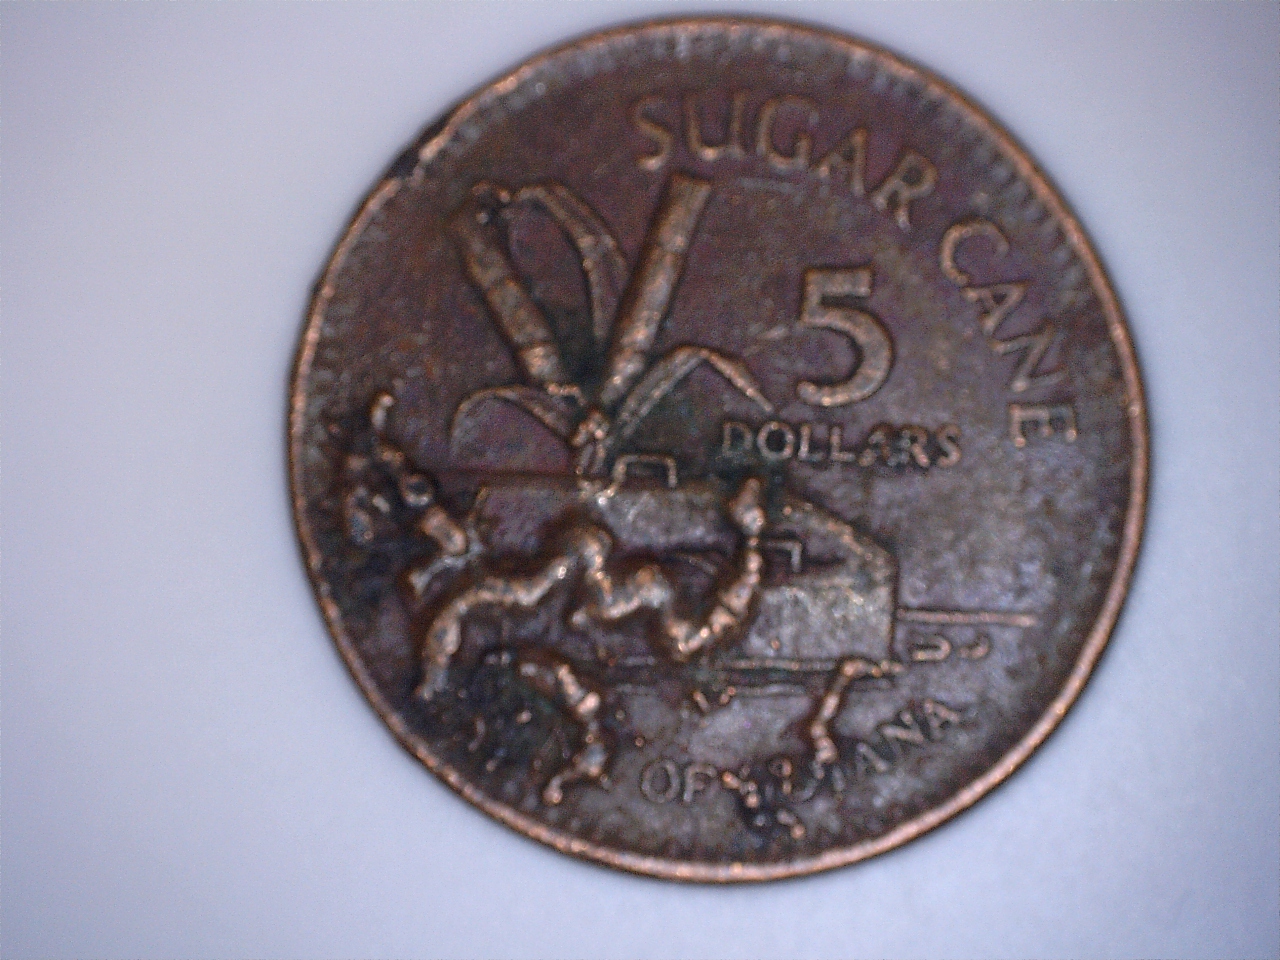 5 dollar 1996 guyana 2.jpg